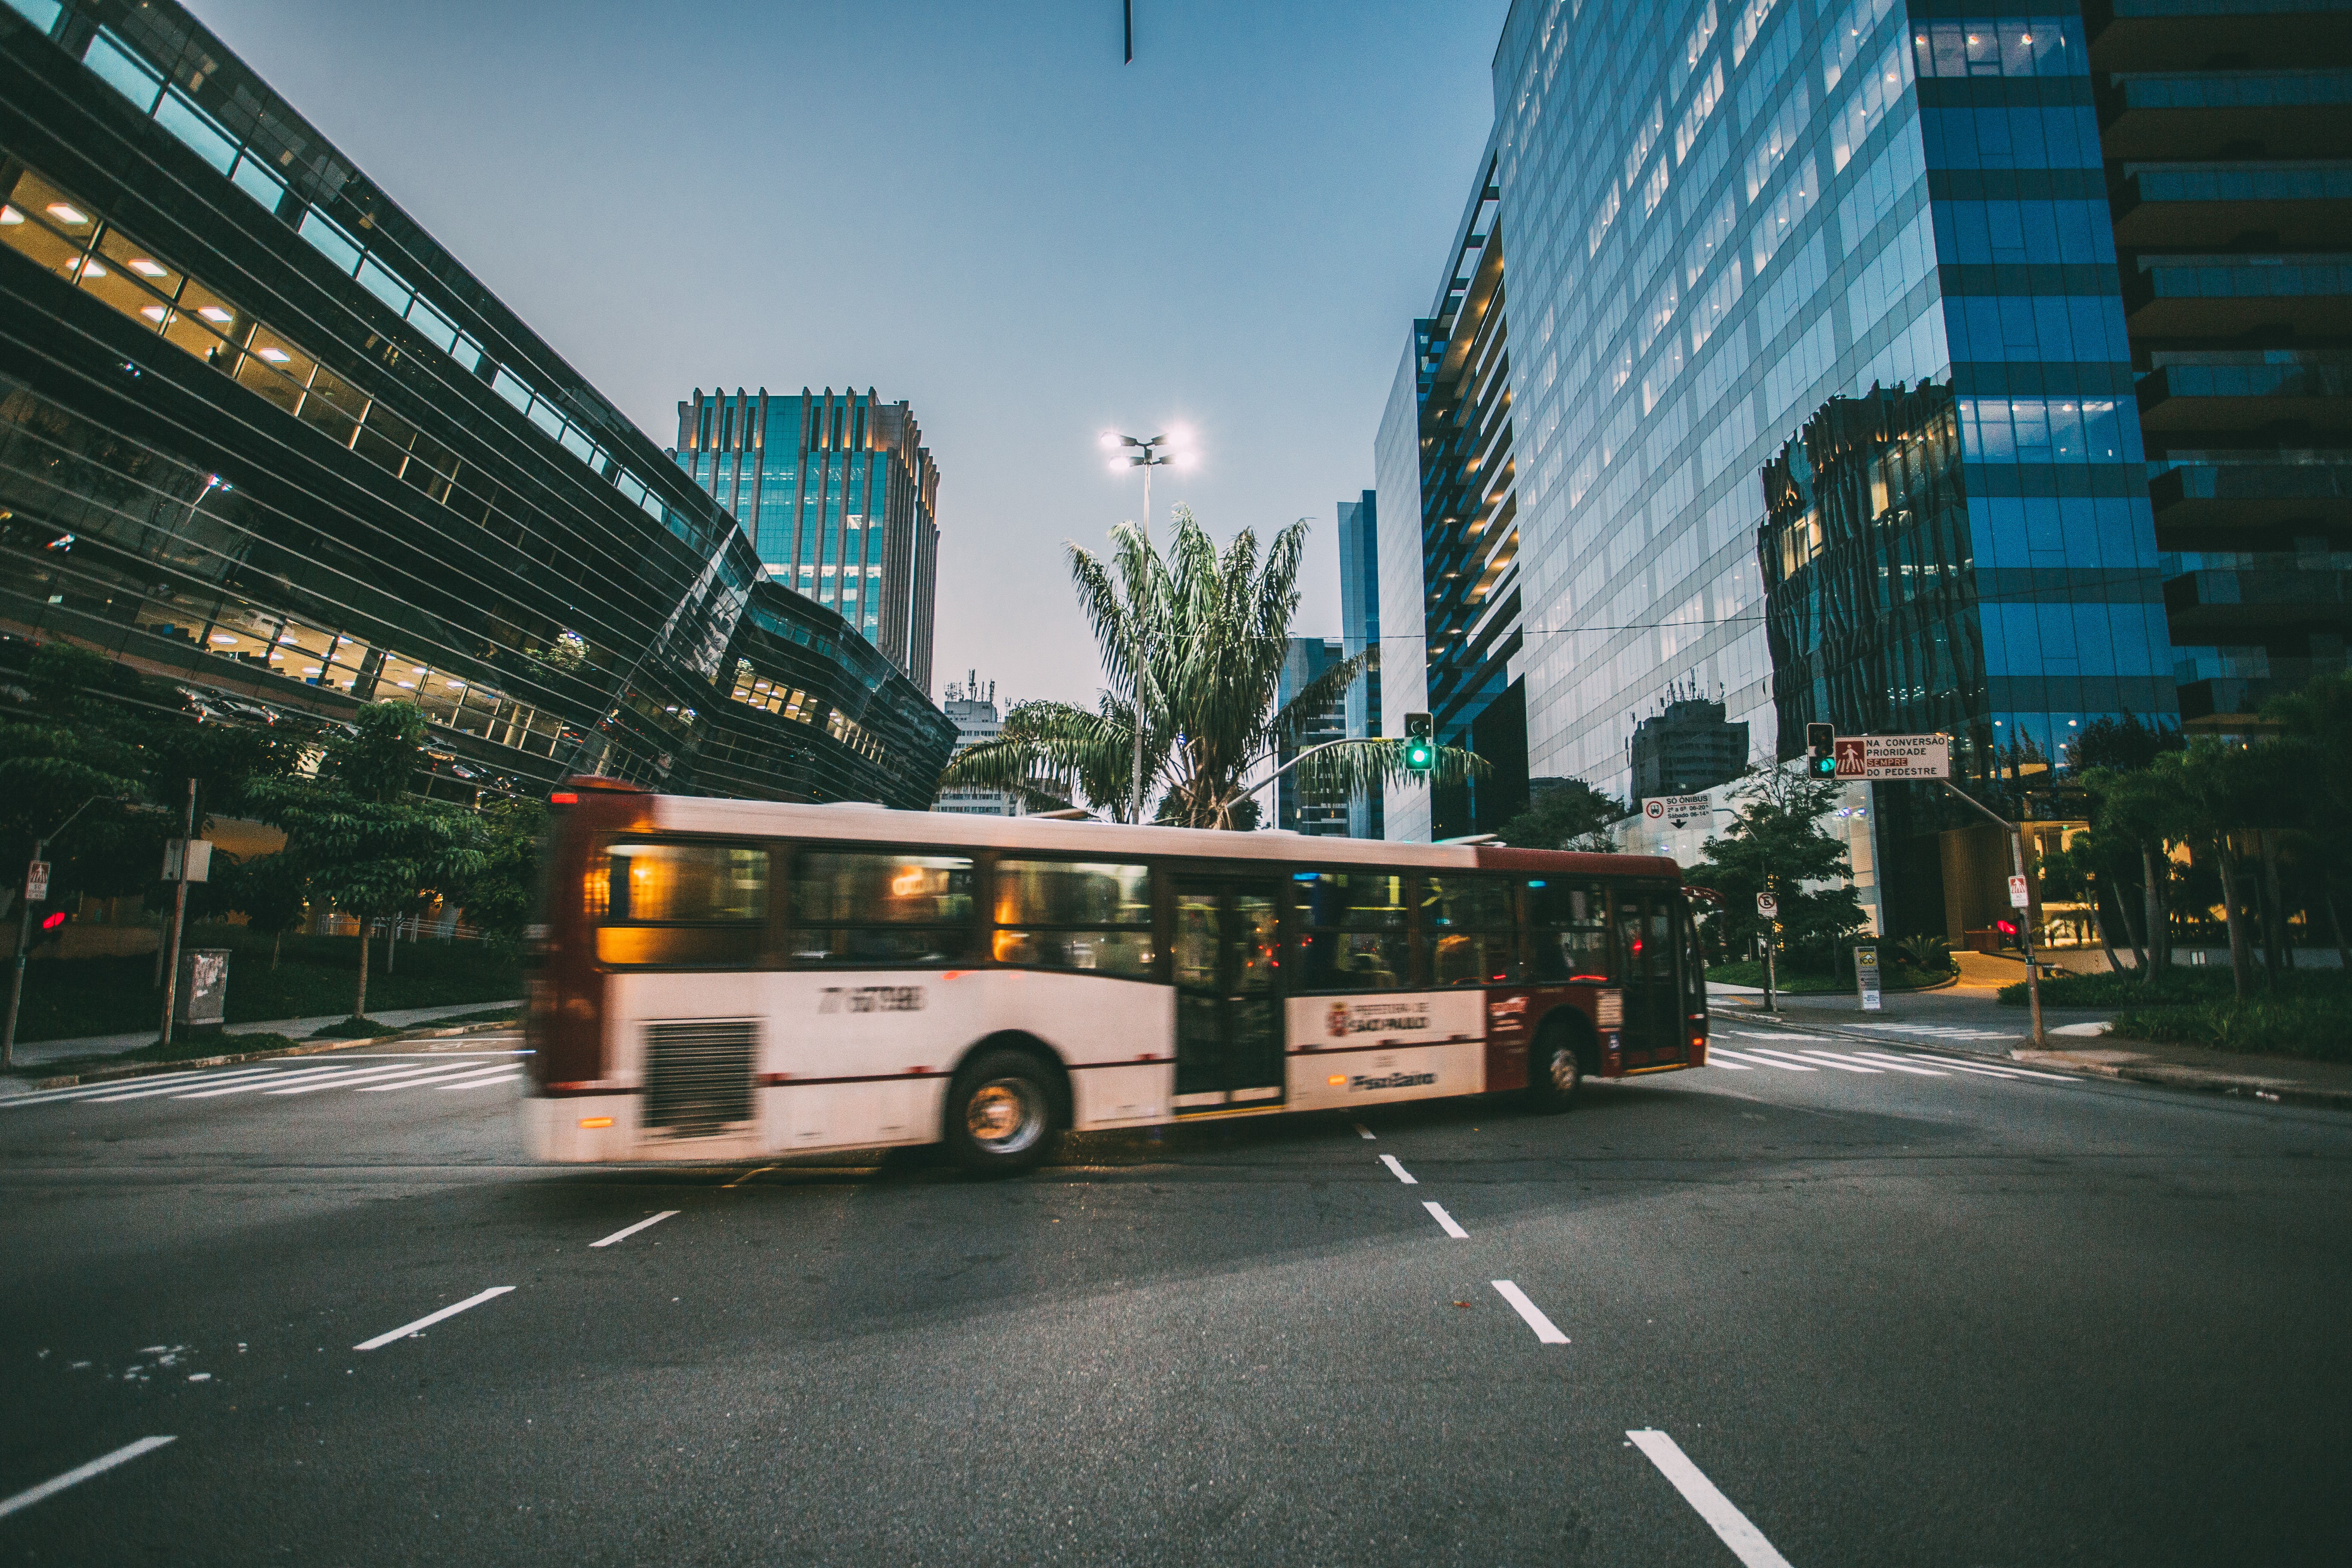 Deslocamento para o trabalho pode explicar concentração de casos de COVID-19 em alguns bairros de SP. Acima: ônibus em cruzamento na cidade de São Paulo (Foto: Kaique Roch/Pexels)